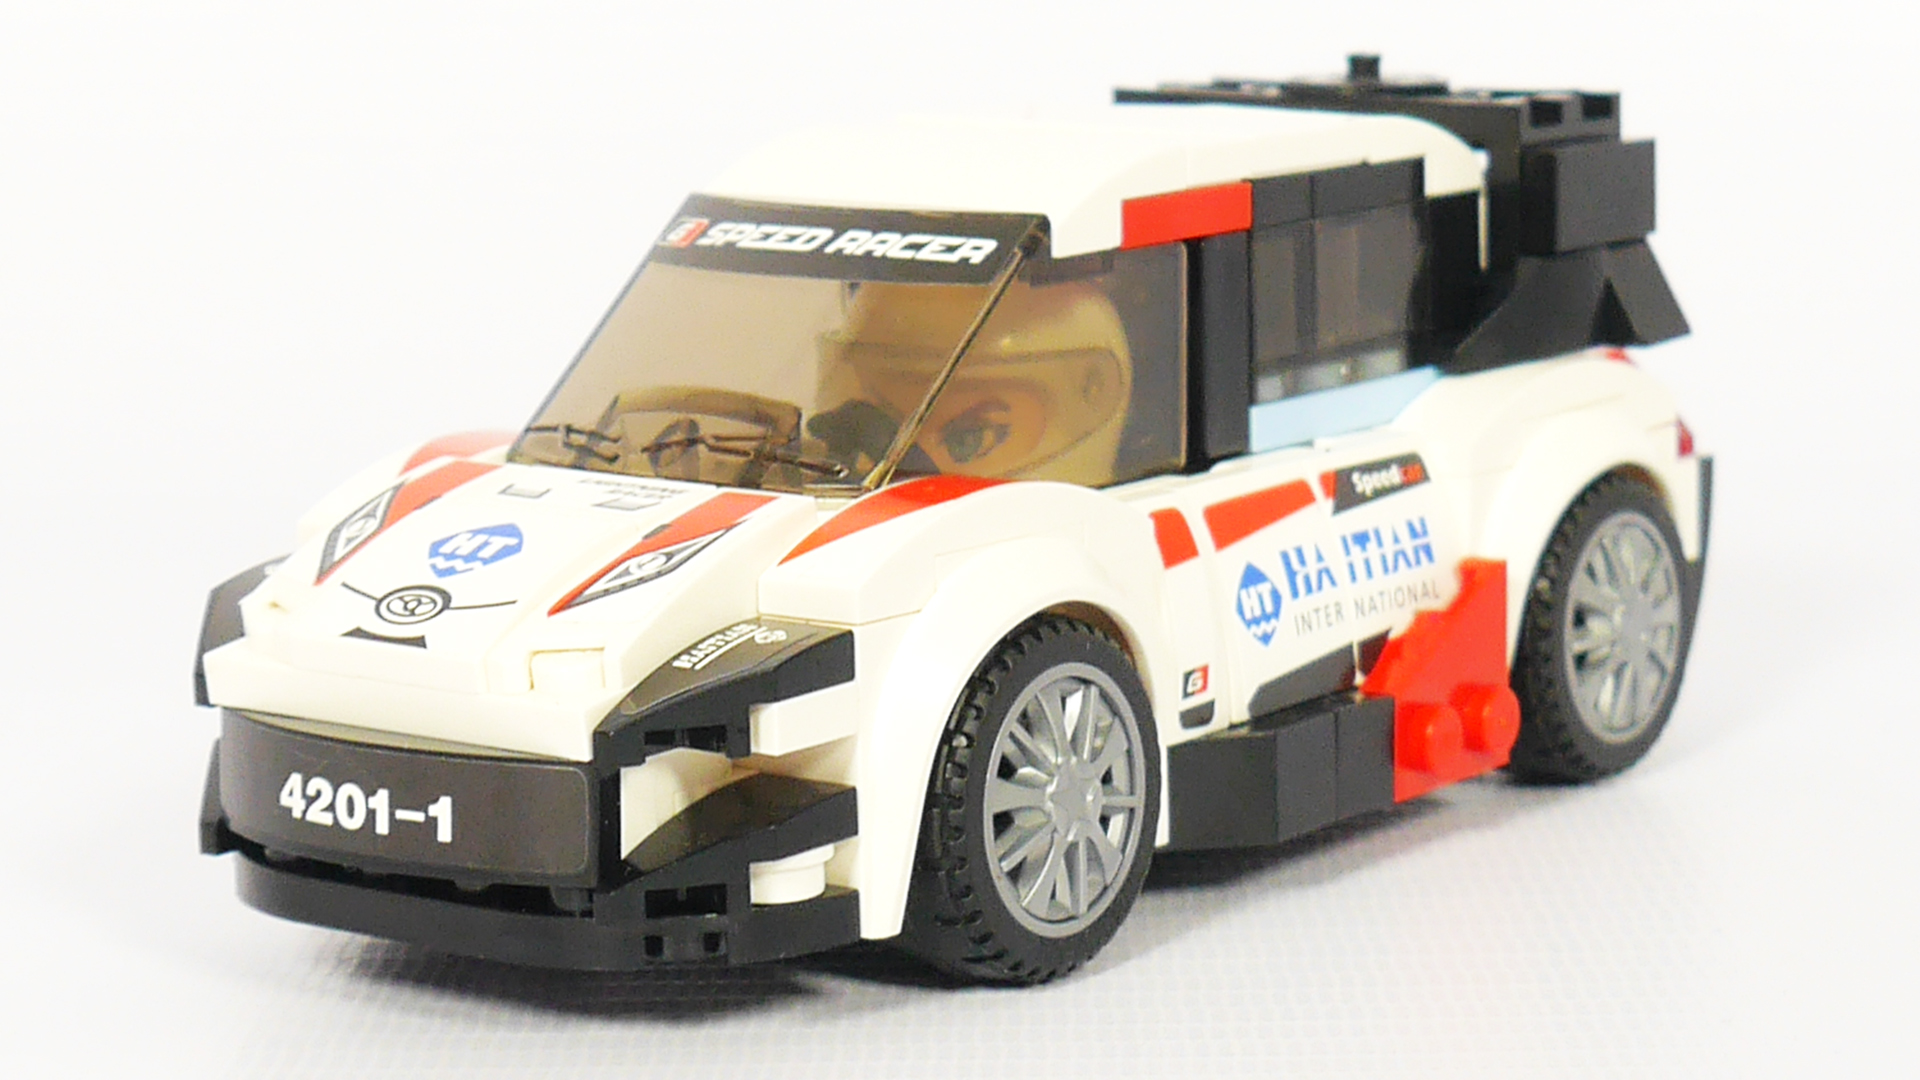 Собираем LEGO гонку -  Qman MineCity 4201-1 Aurora WRC-11 | Обзор и сборка конструктора Лего